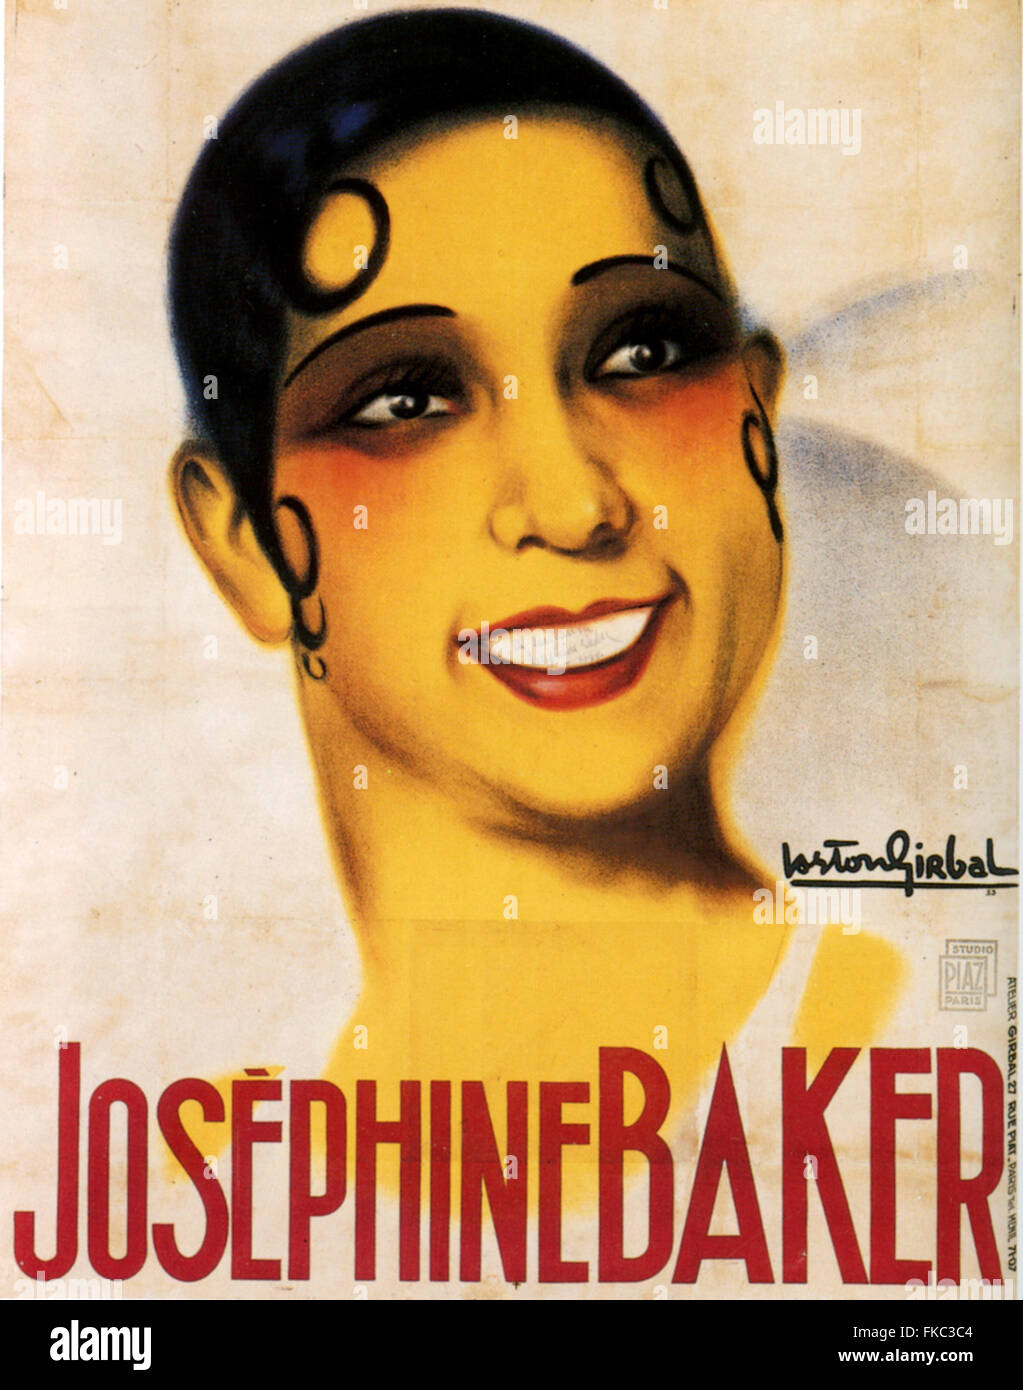 Josephine baker affiche Banque de photographies et d'images à haute  résolution - Alamy